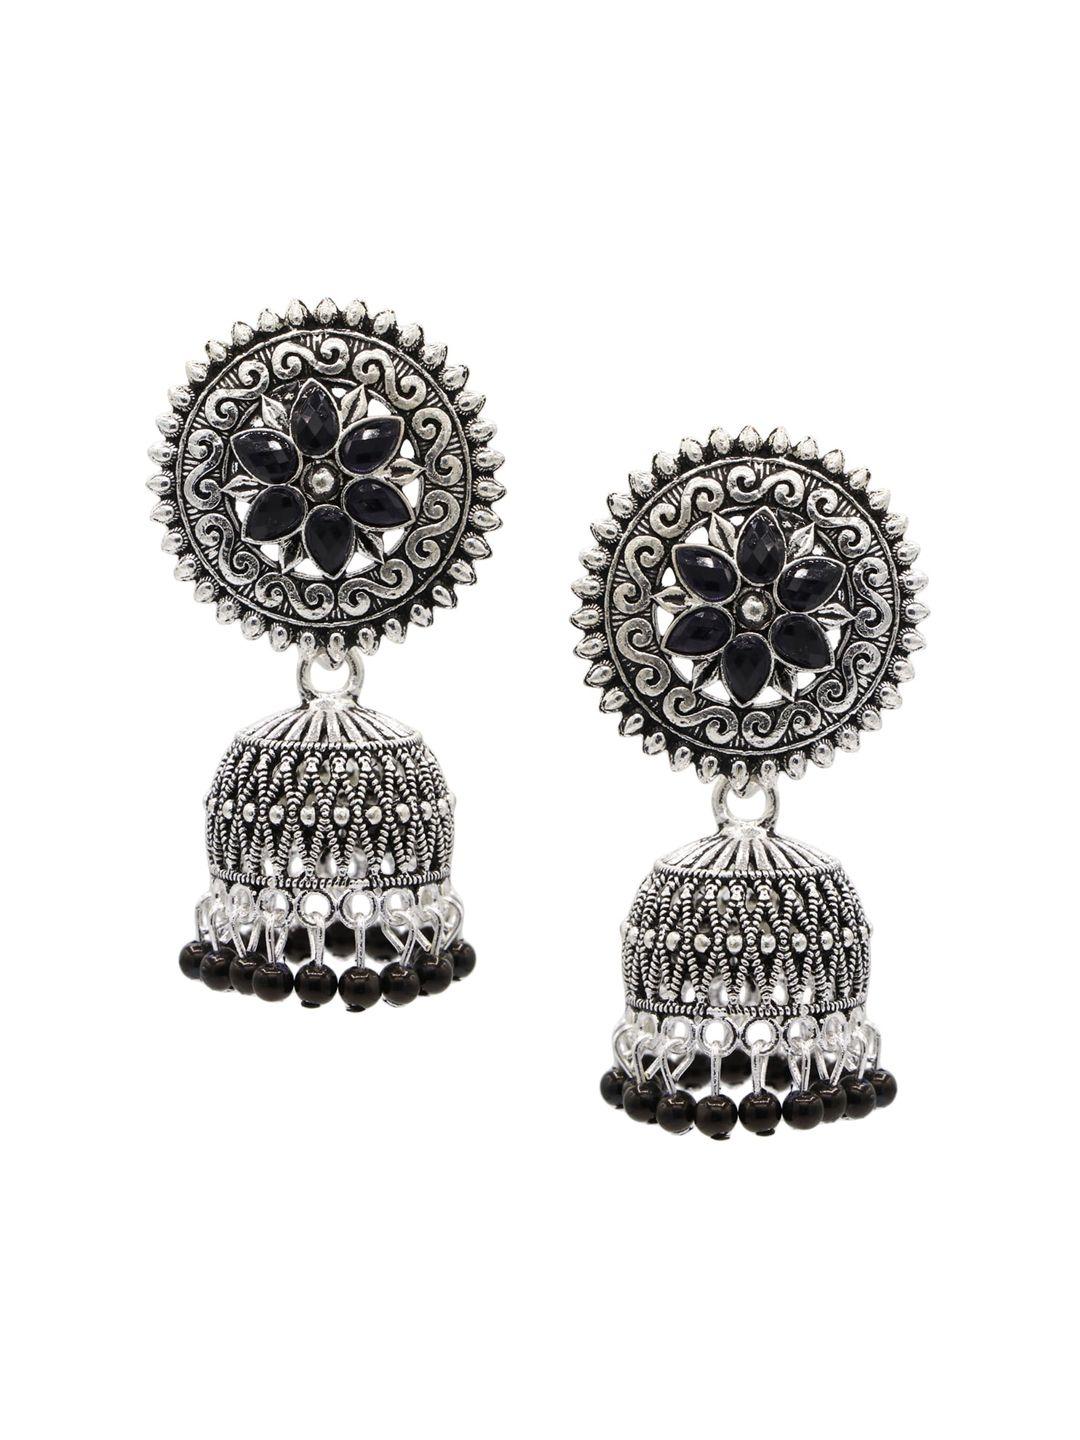 asmitta jewellery black & oxidised silver-plated jhumkas earrings